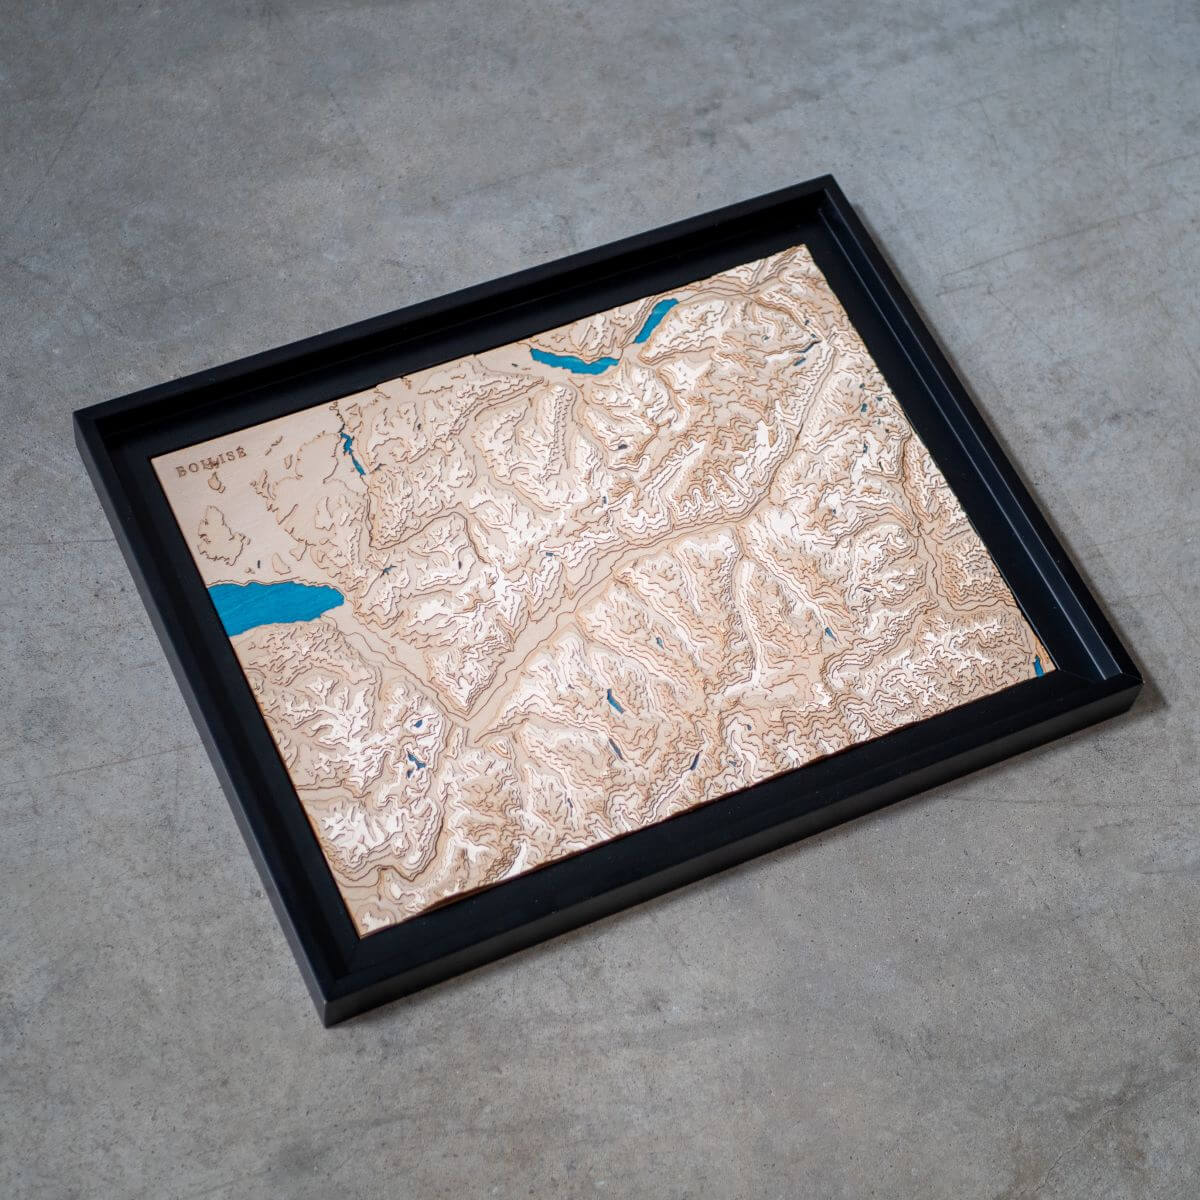 Détails du relief de la carte de la vallée du Rhône suisse en bois